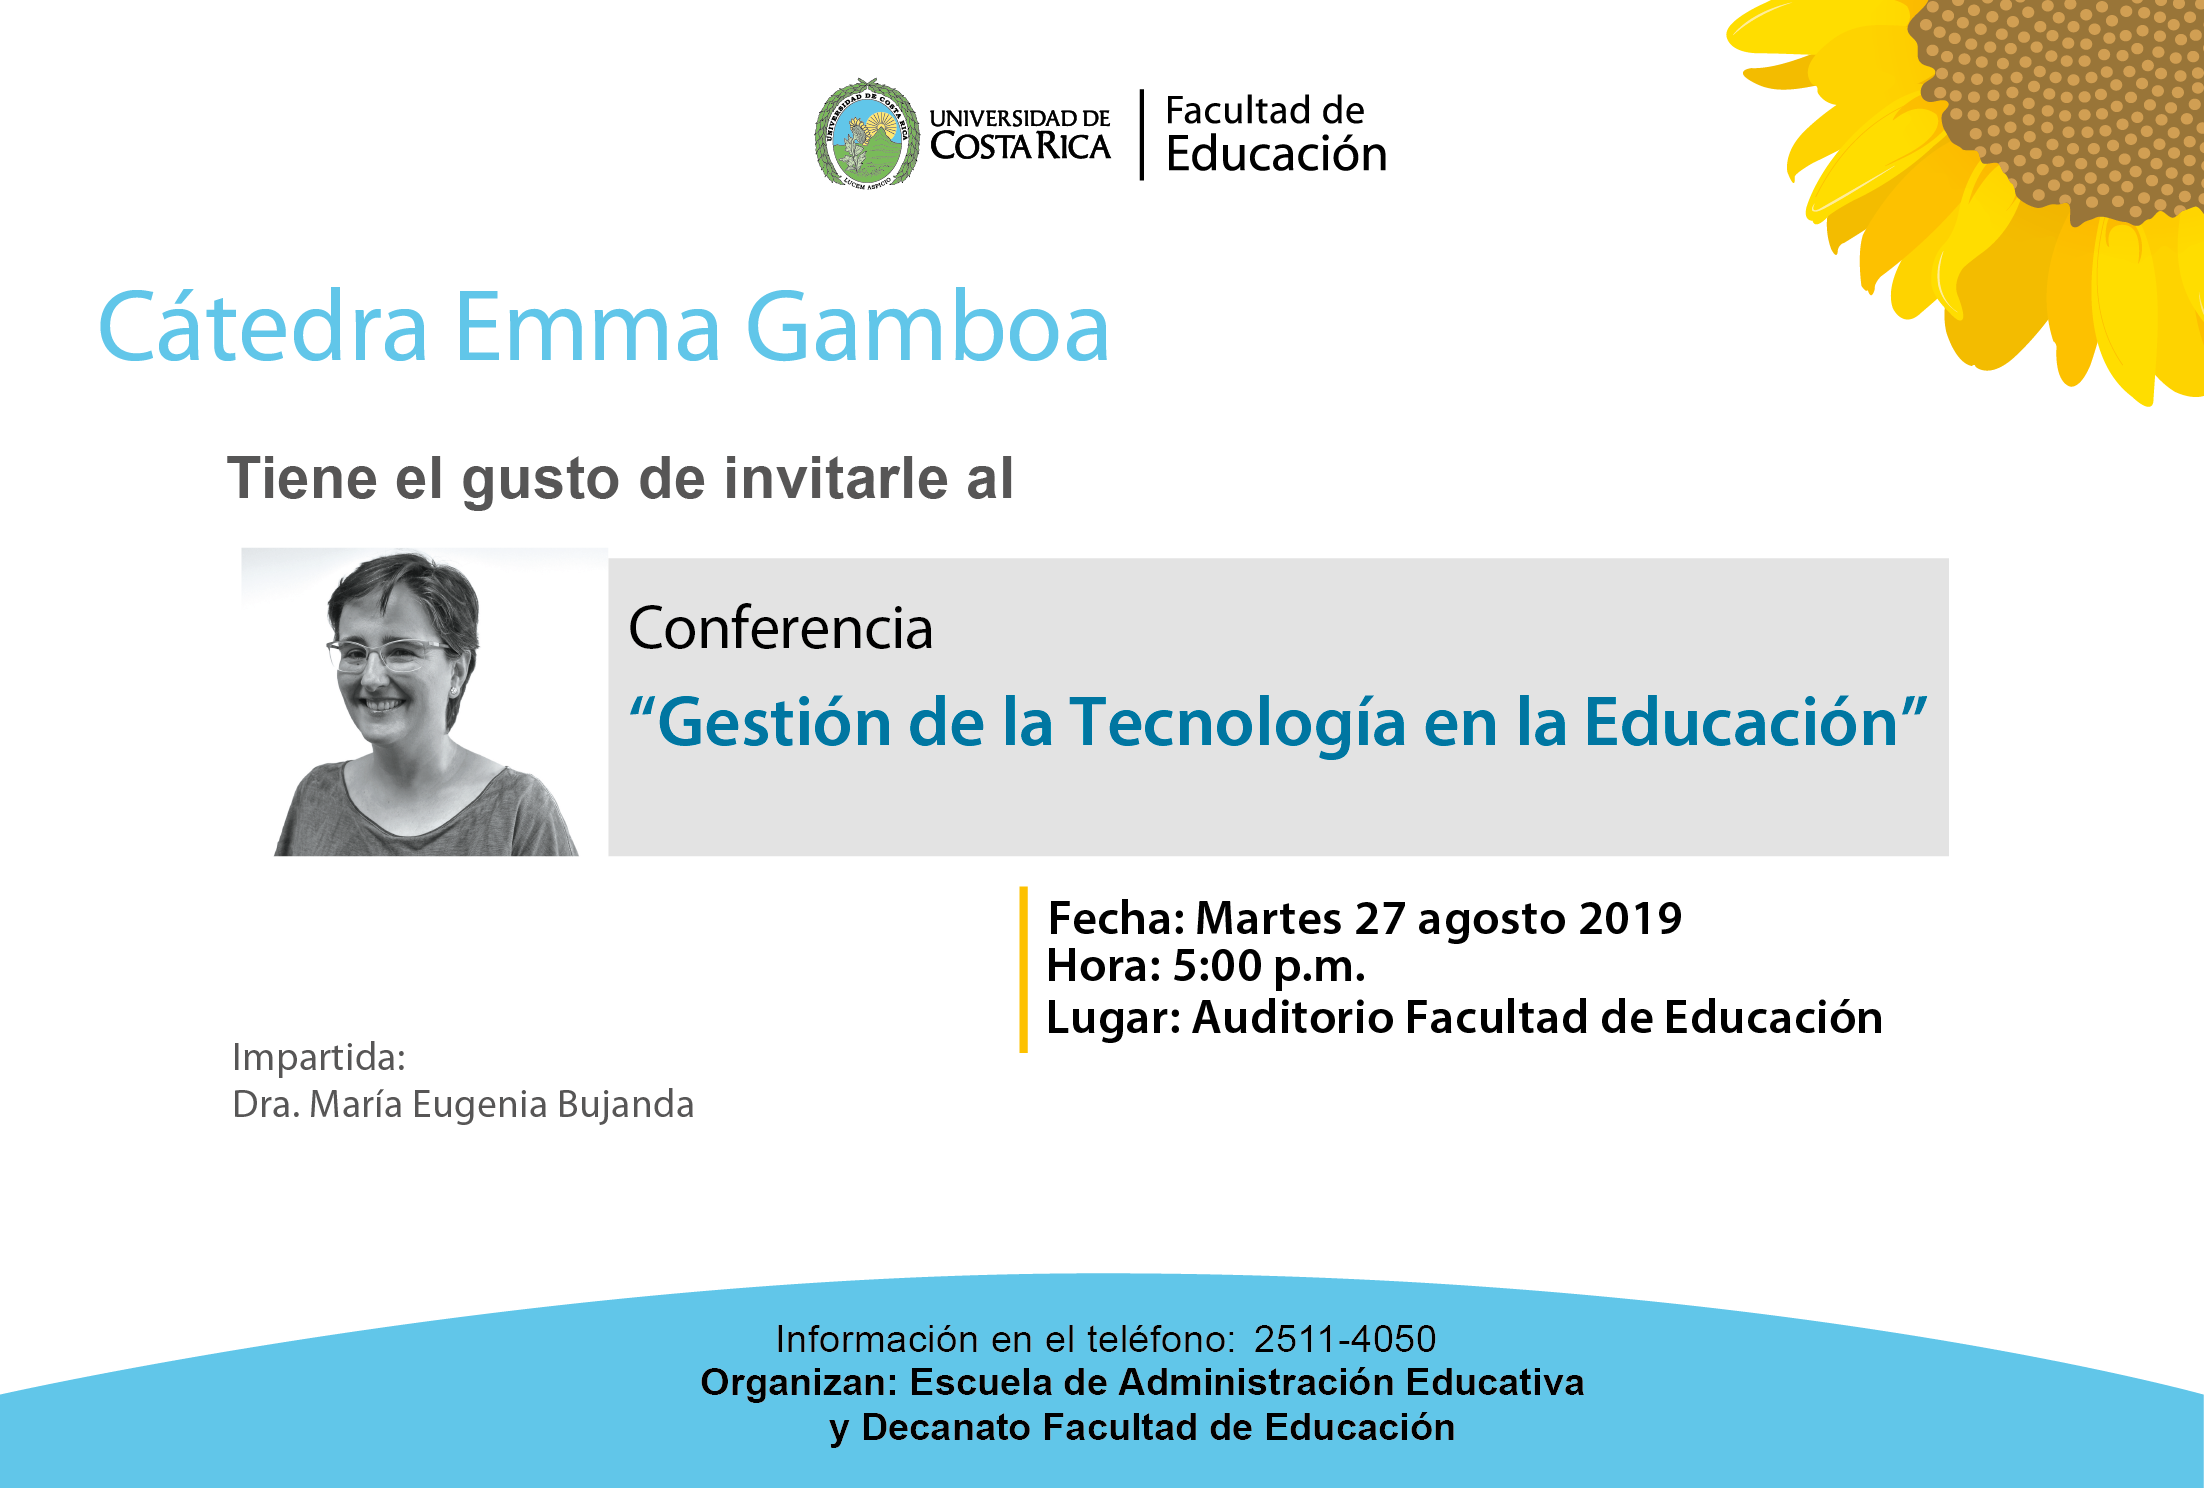 Cátedra Emma Gamboa: Conferencia “Gestión de la Tecnología en la Educación”